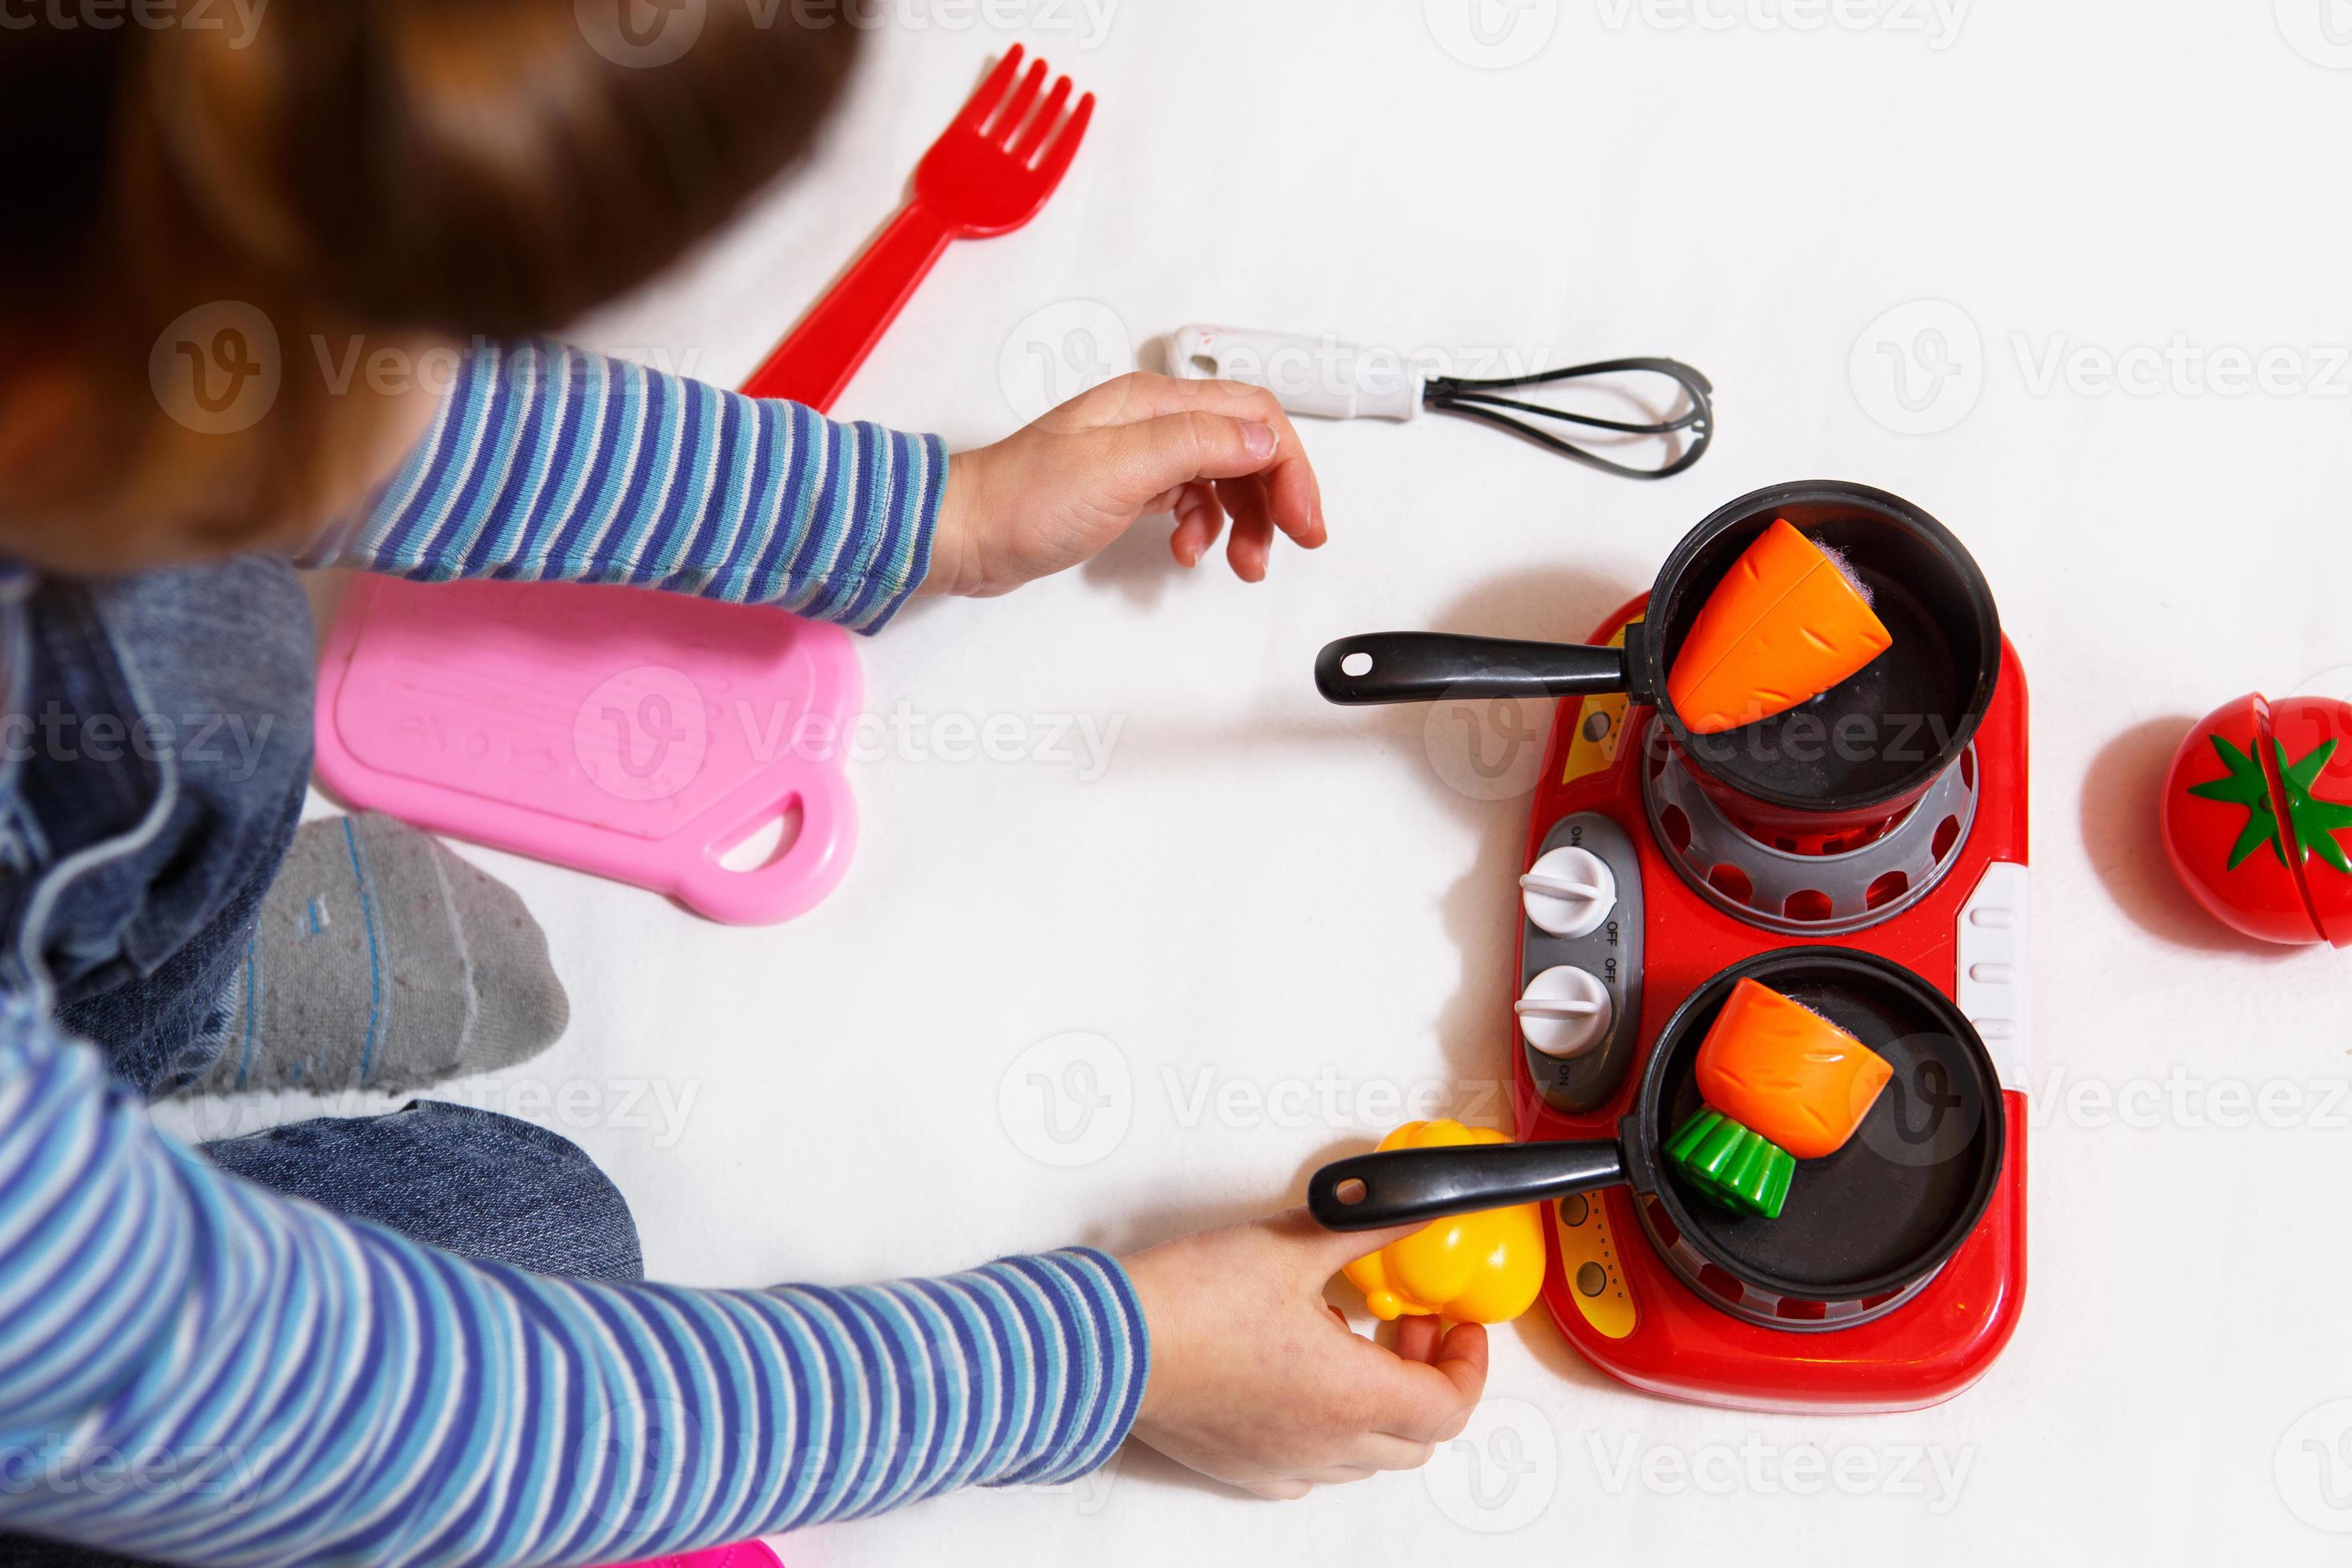 il bambino gioca con frutta e verdura di plastica a fette con il velcro,  cuoce il cibo su un fornello giocattolo in una ciotola. cucina per bambini,  una ragazza impara a cucinare.